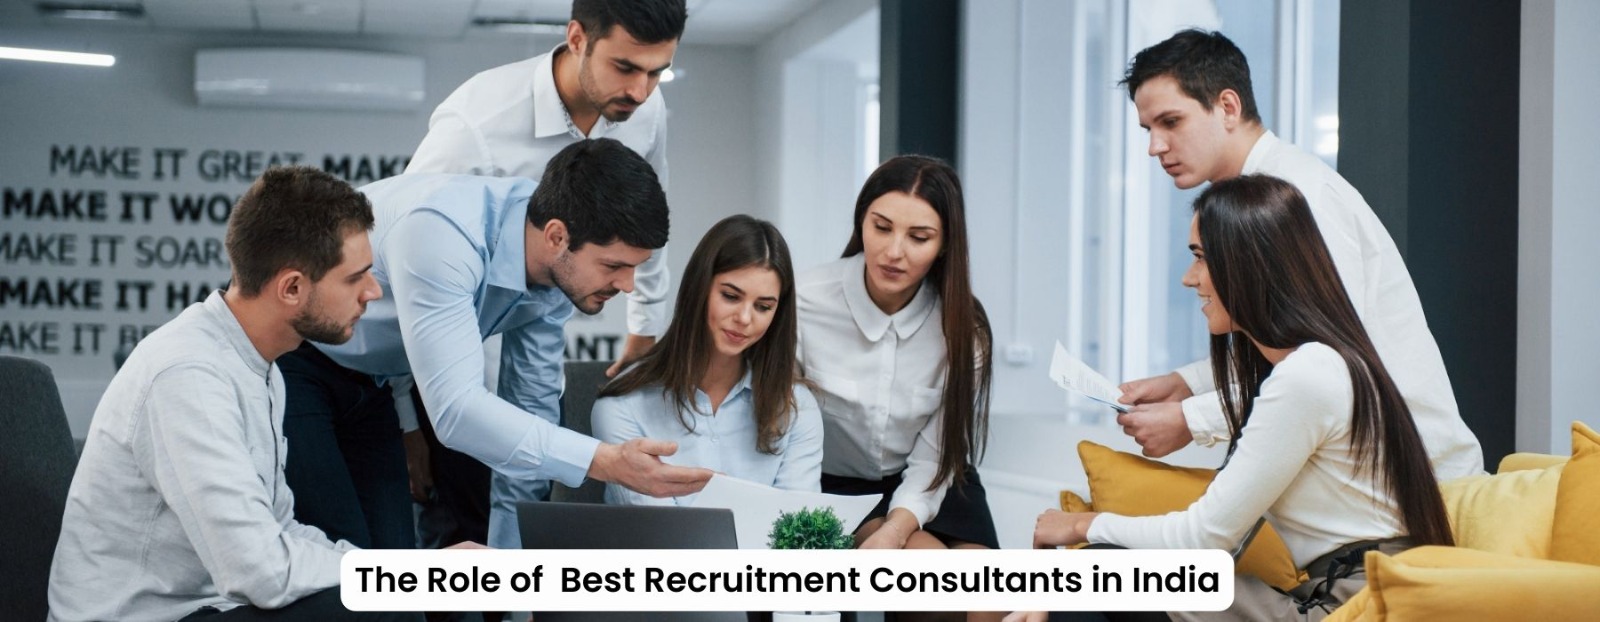 Best Recruitment Consultants in India